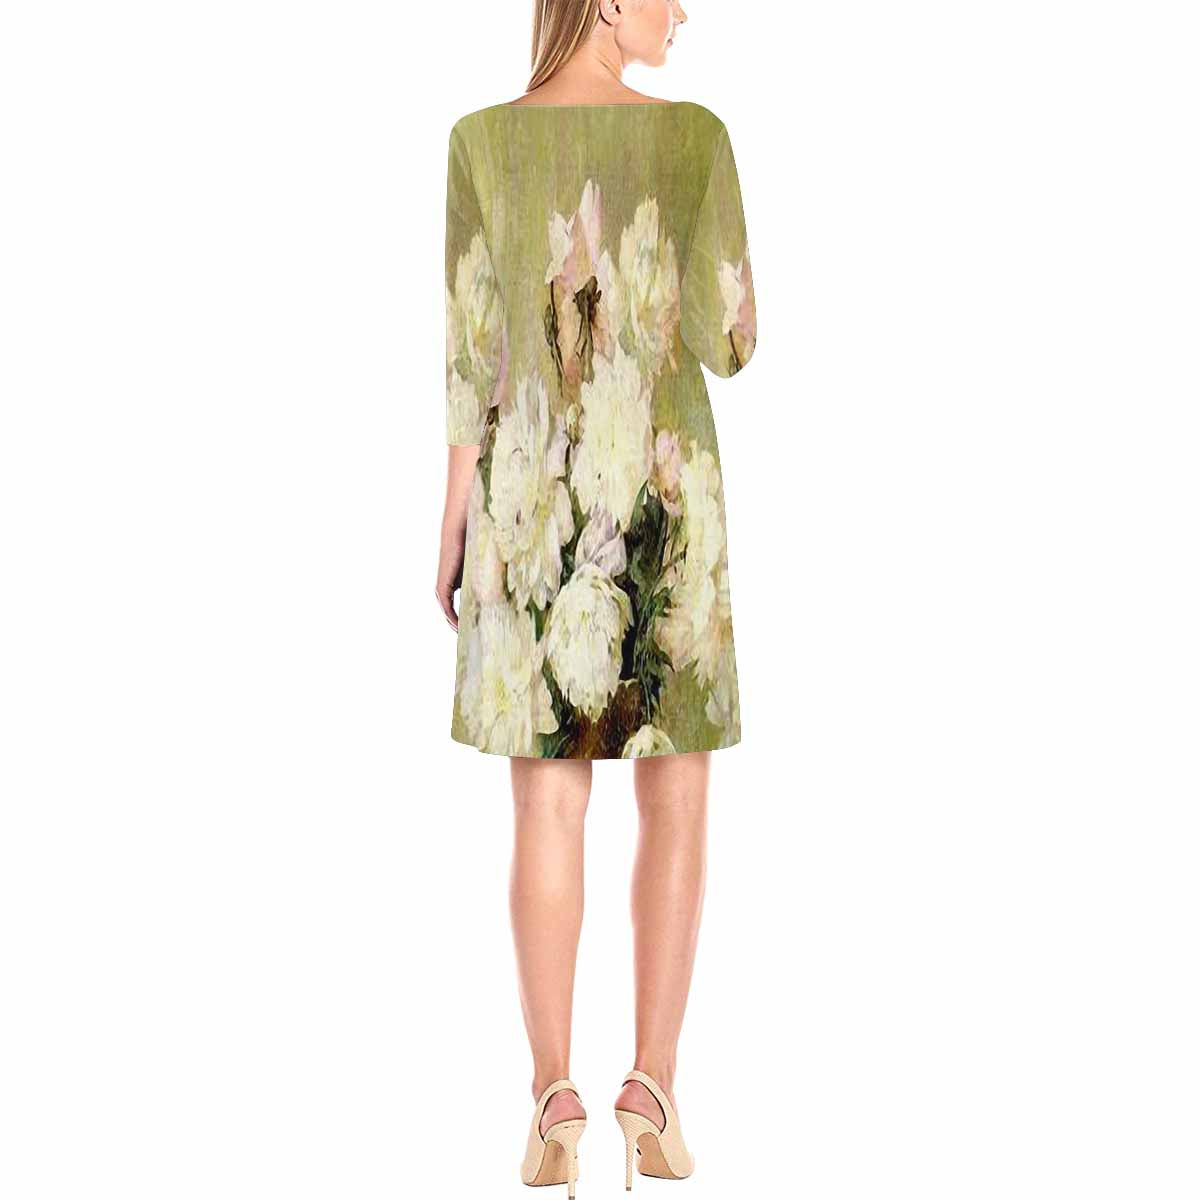 Vintage floral loose dress, model D29532 Design 35